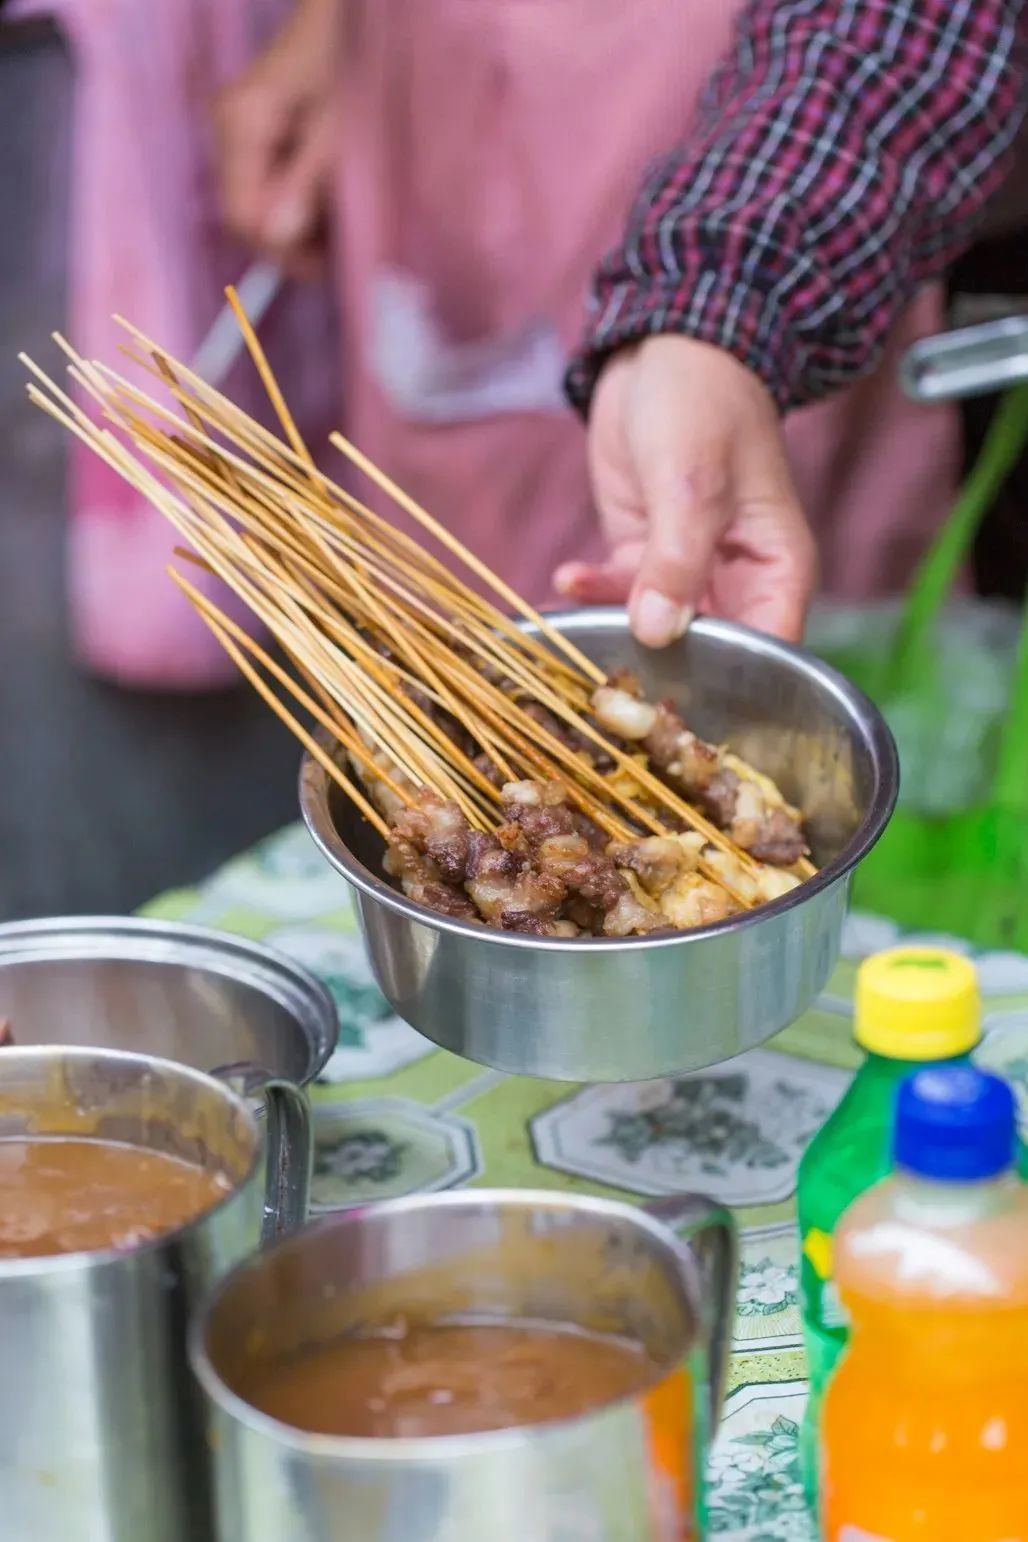 Khám phá ẩm thực vỉa hè của các bà dì Thượng Hải: Những quầy hàng gắn liền với tuổi thơ bao thế hệ - ảnh 2